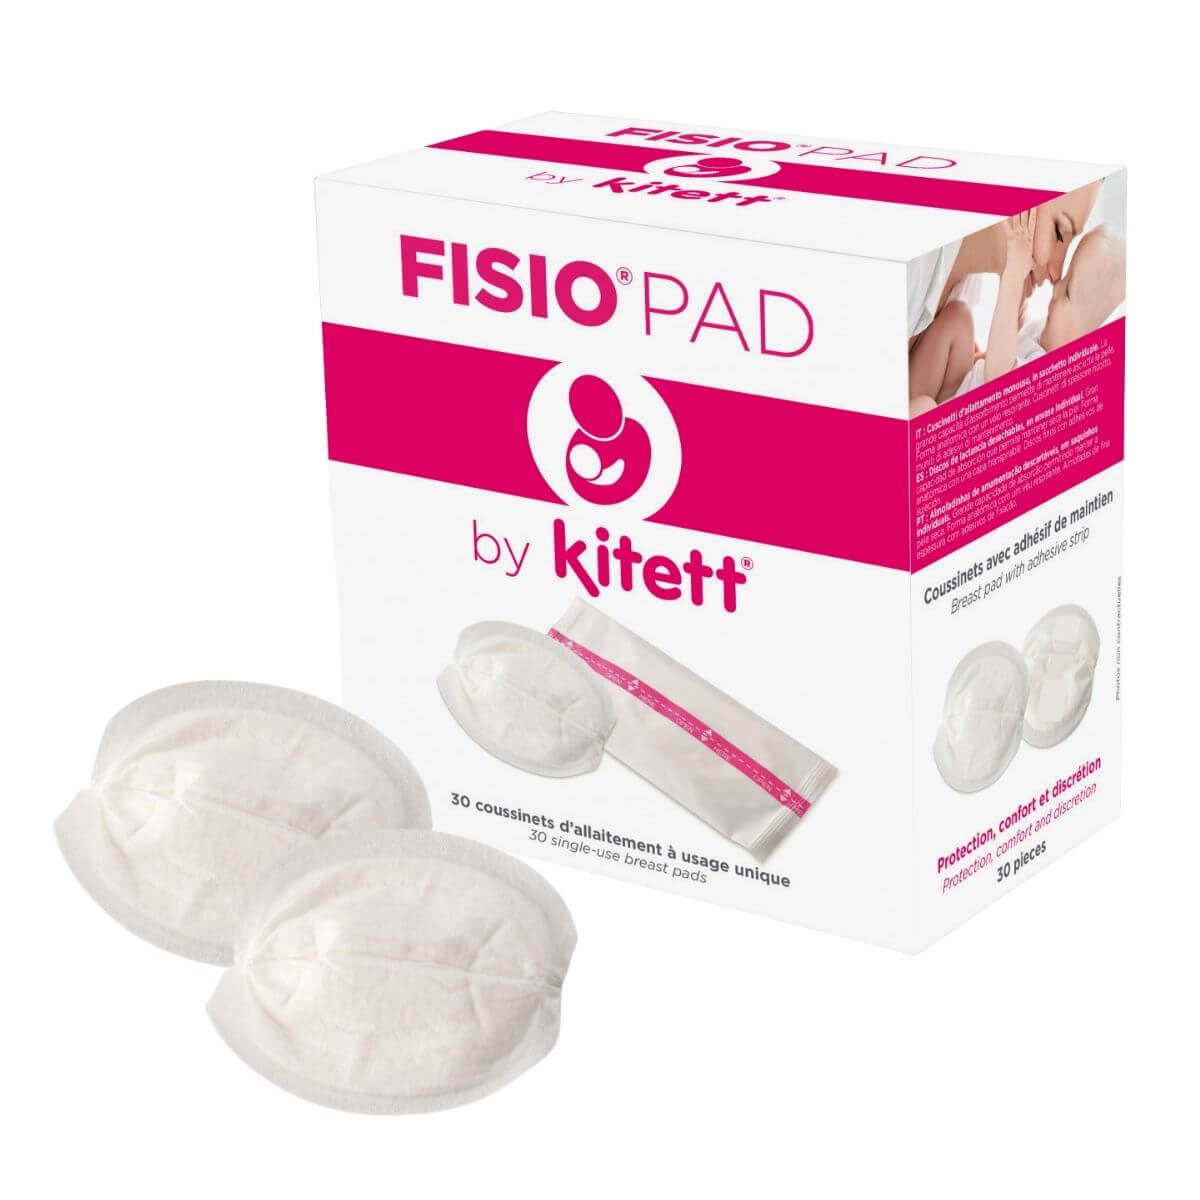 Pack de 30 coussinets d'allaitement Fisio Pad - Kitett